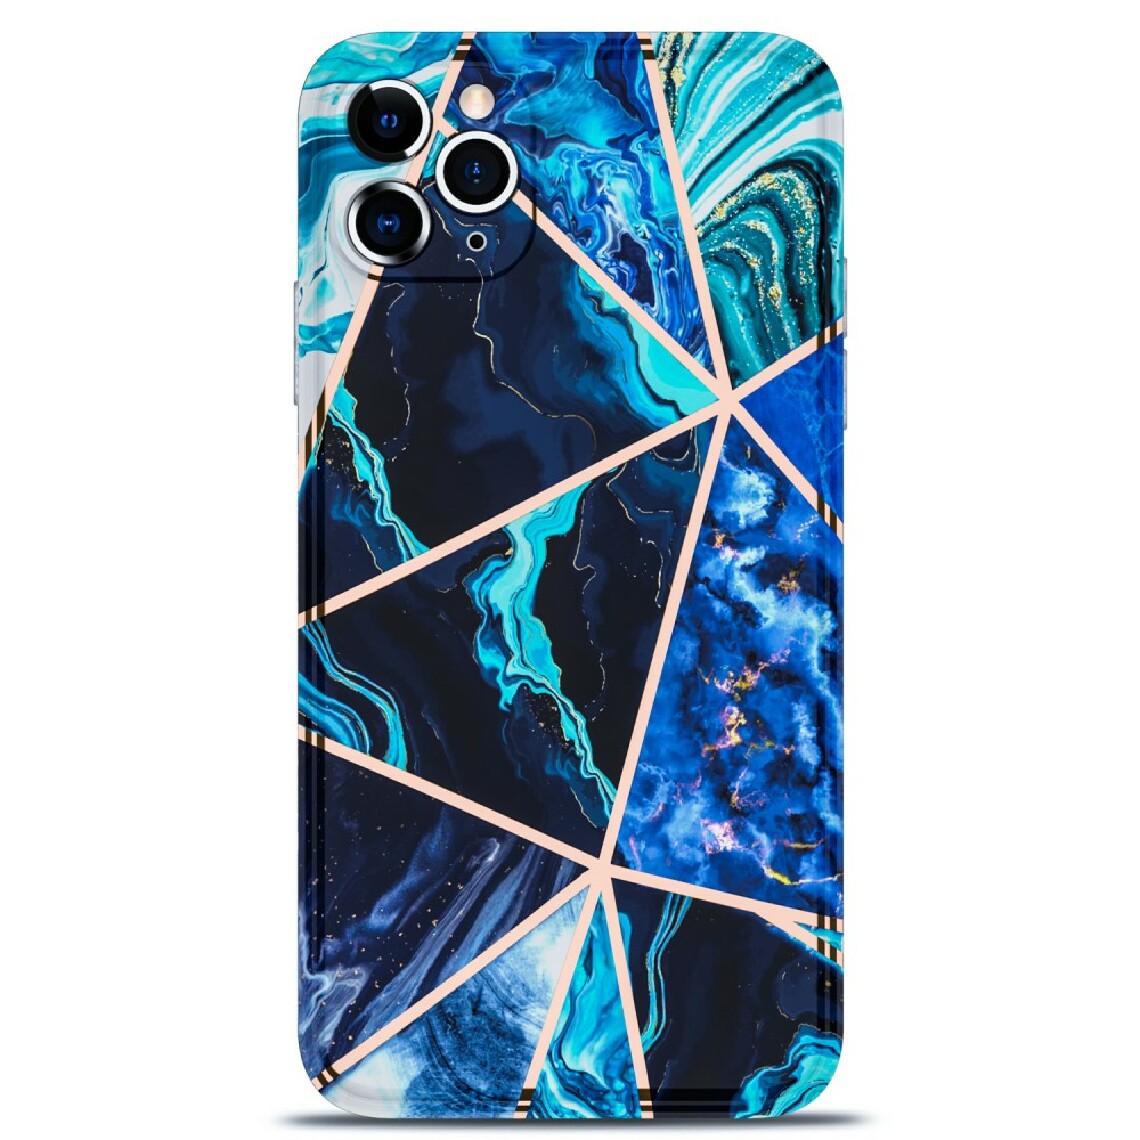 Other - Coque en TPU impression de motif de marbre d'épissage de bord droit de galvanoplastie bleu pour votre Apple iPhone 11 Pro - Coque, étui smartphone